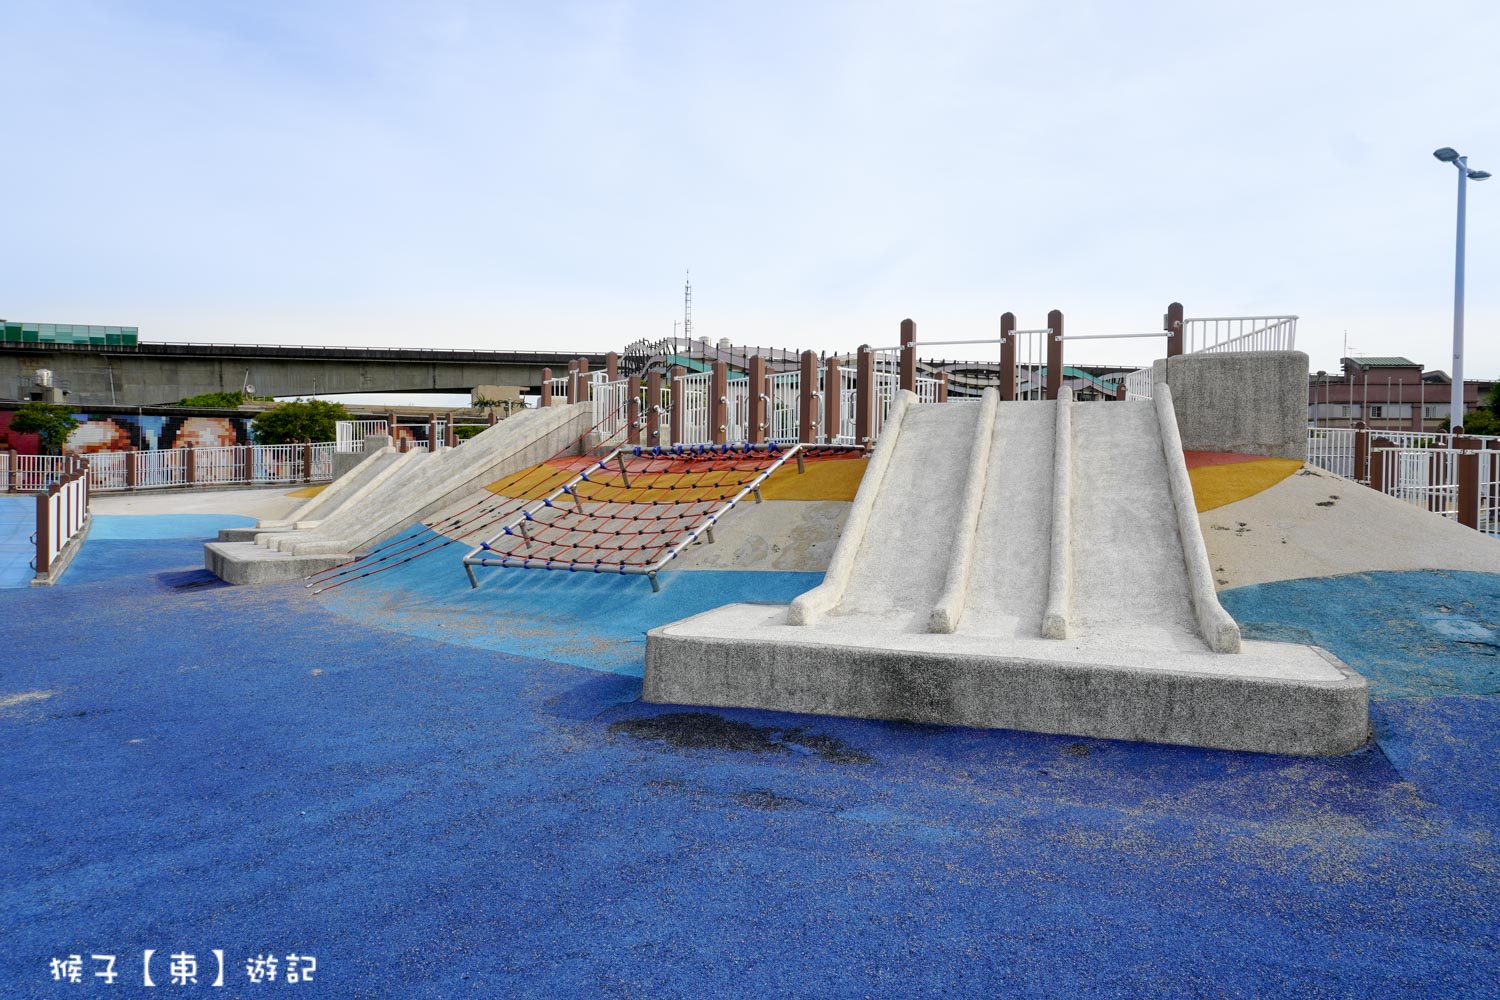 延伸閱讀：[台北] 大佳河濱公園海洋遊戲場 免費玩水放電小孩景點 沙坑 溜滑梯 滑索超多設施